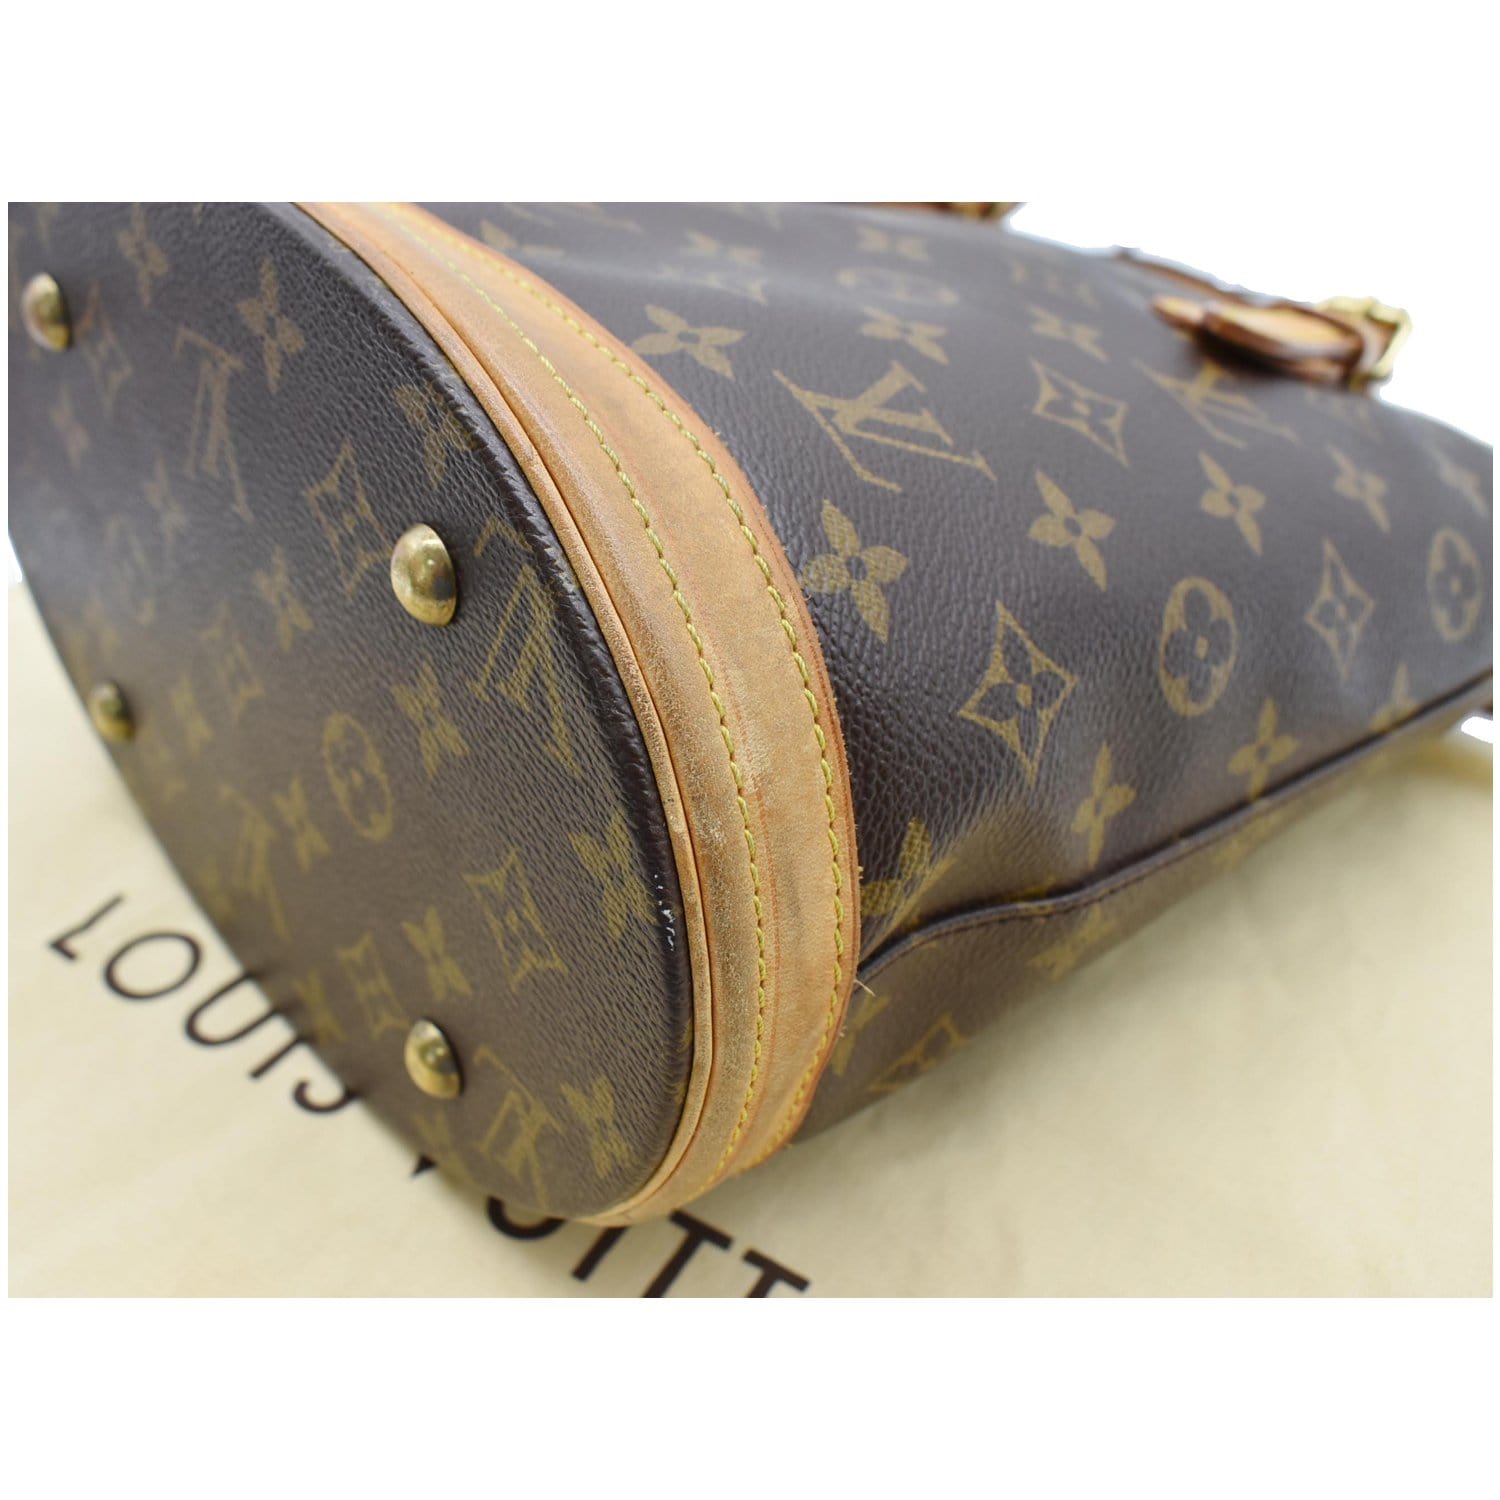 100% authentic Louis-Vuitton barrel bag